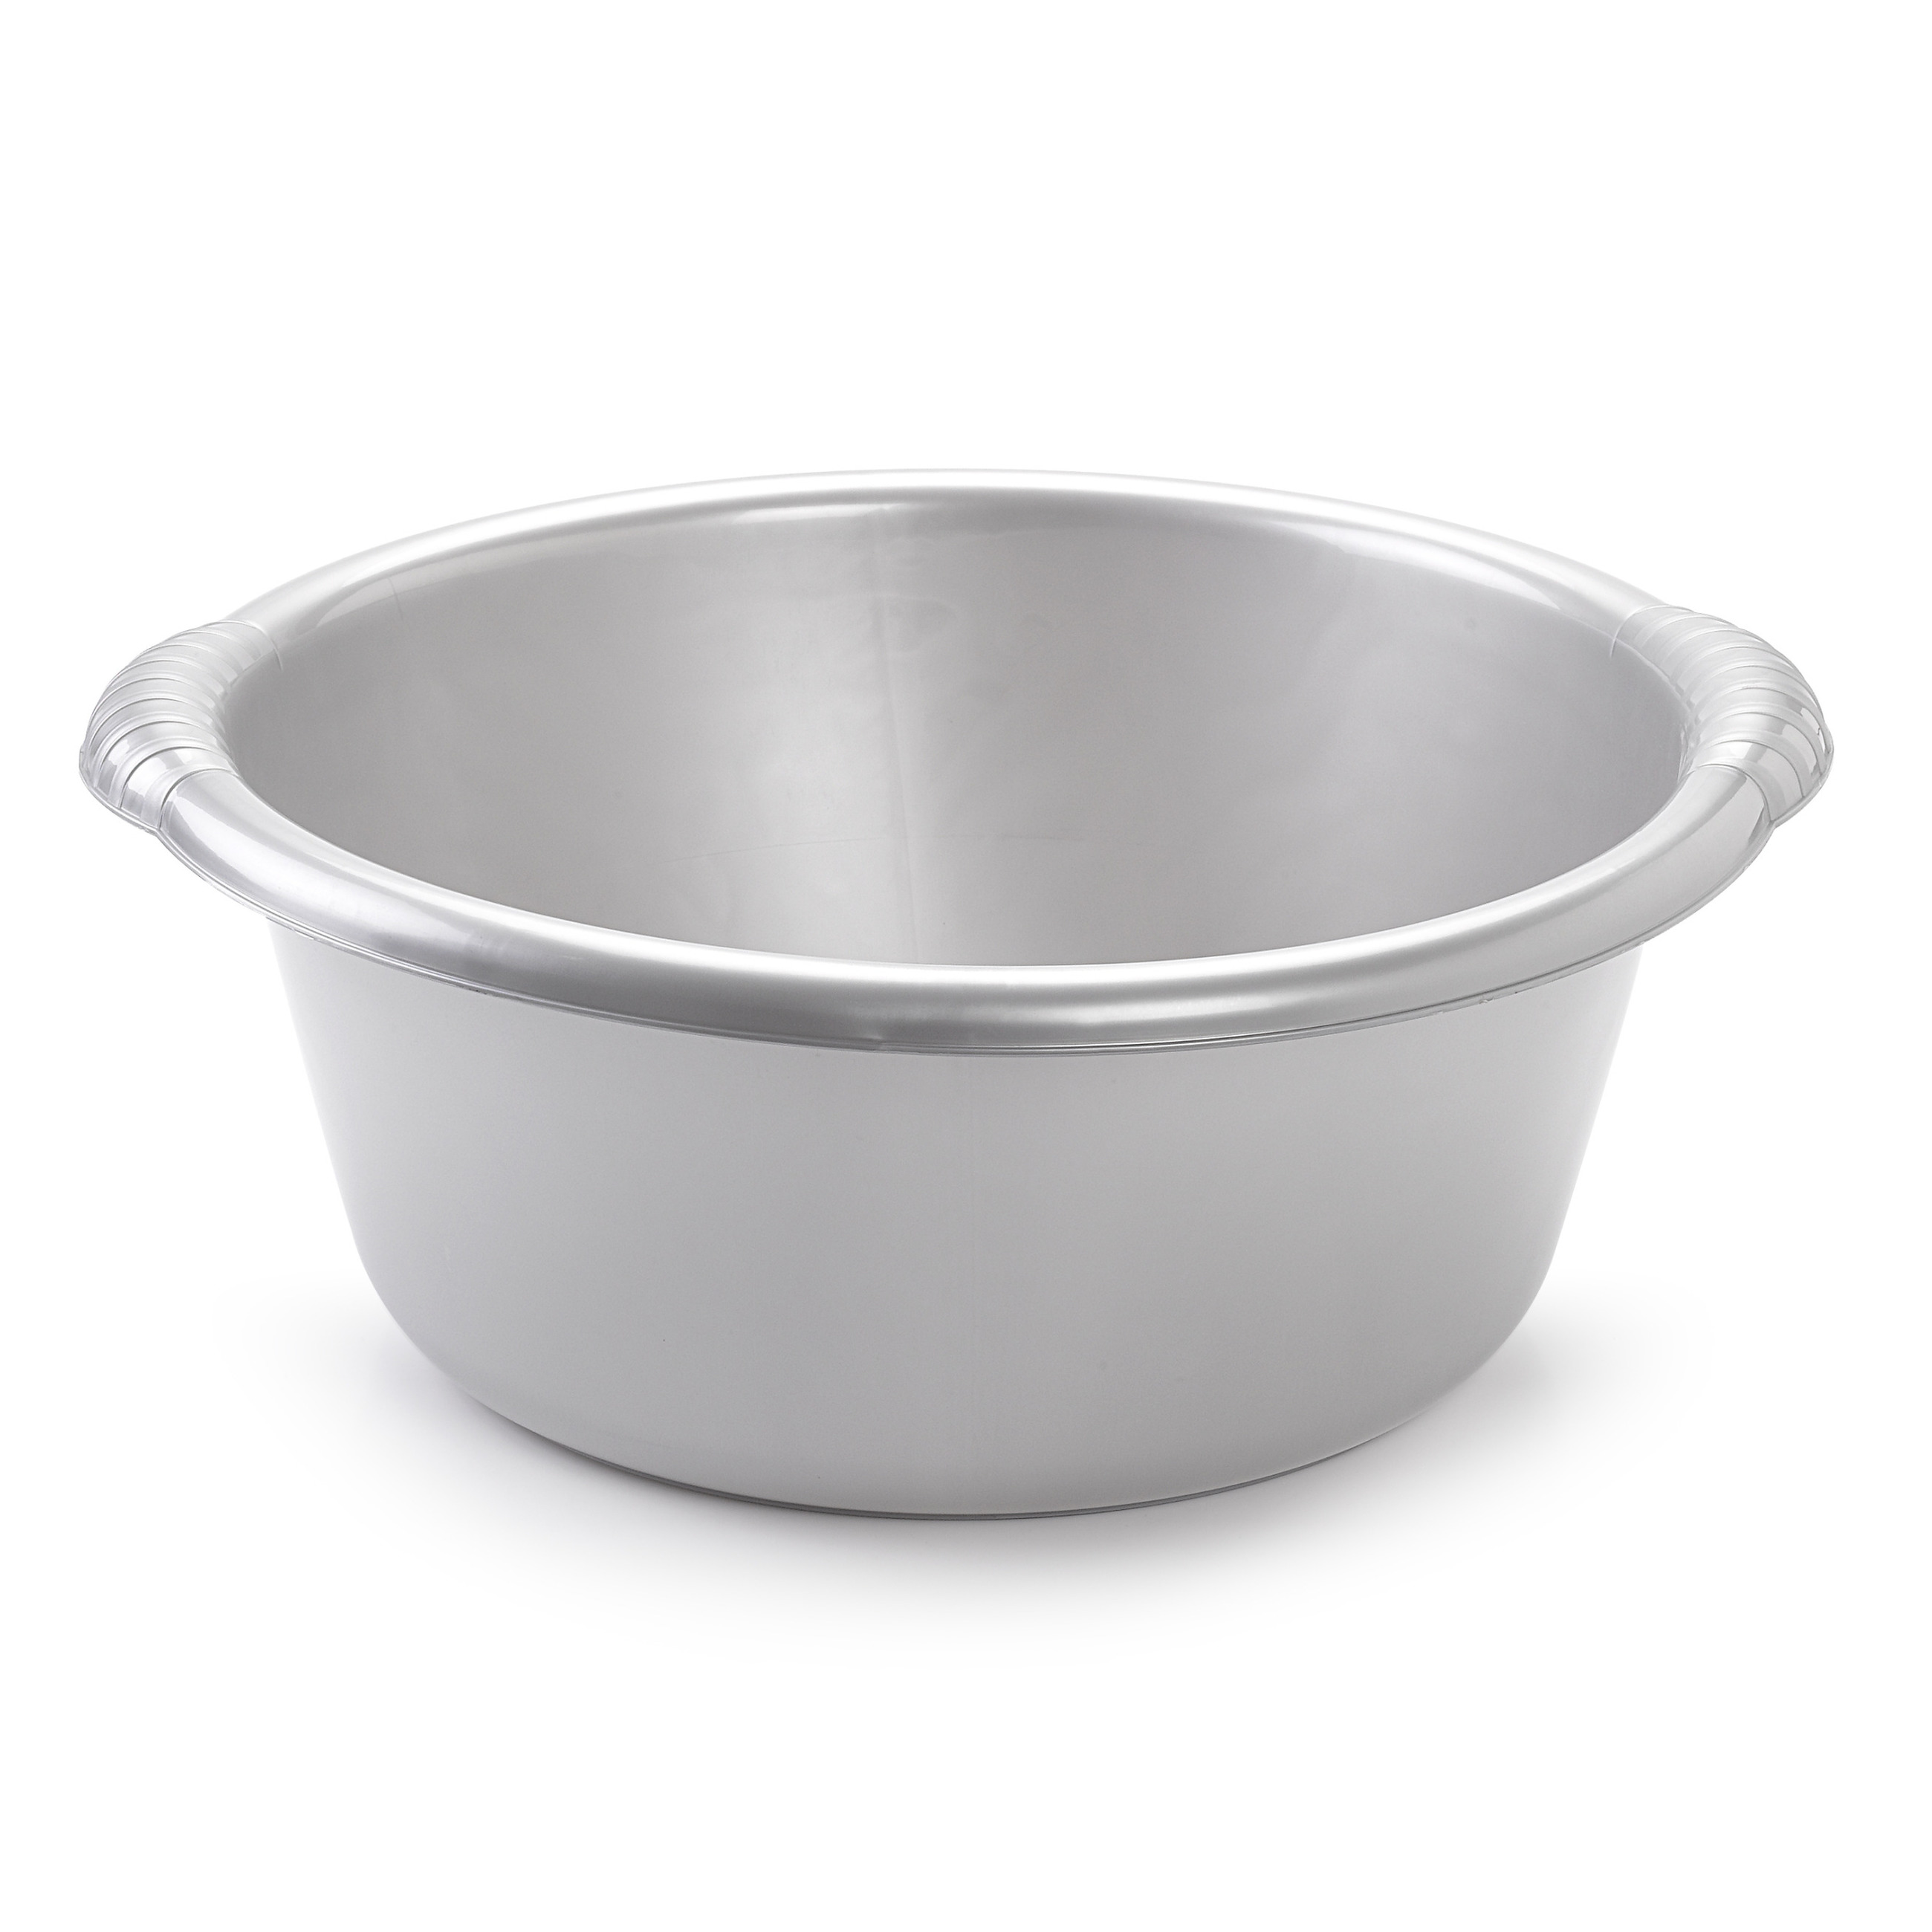 Grote ronde afwasteil-afwasbak zilver 20 liter